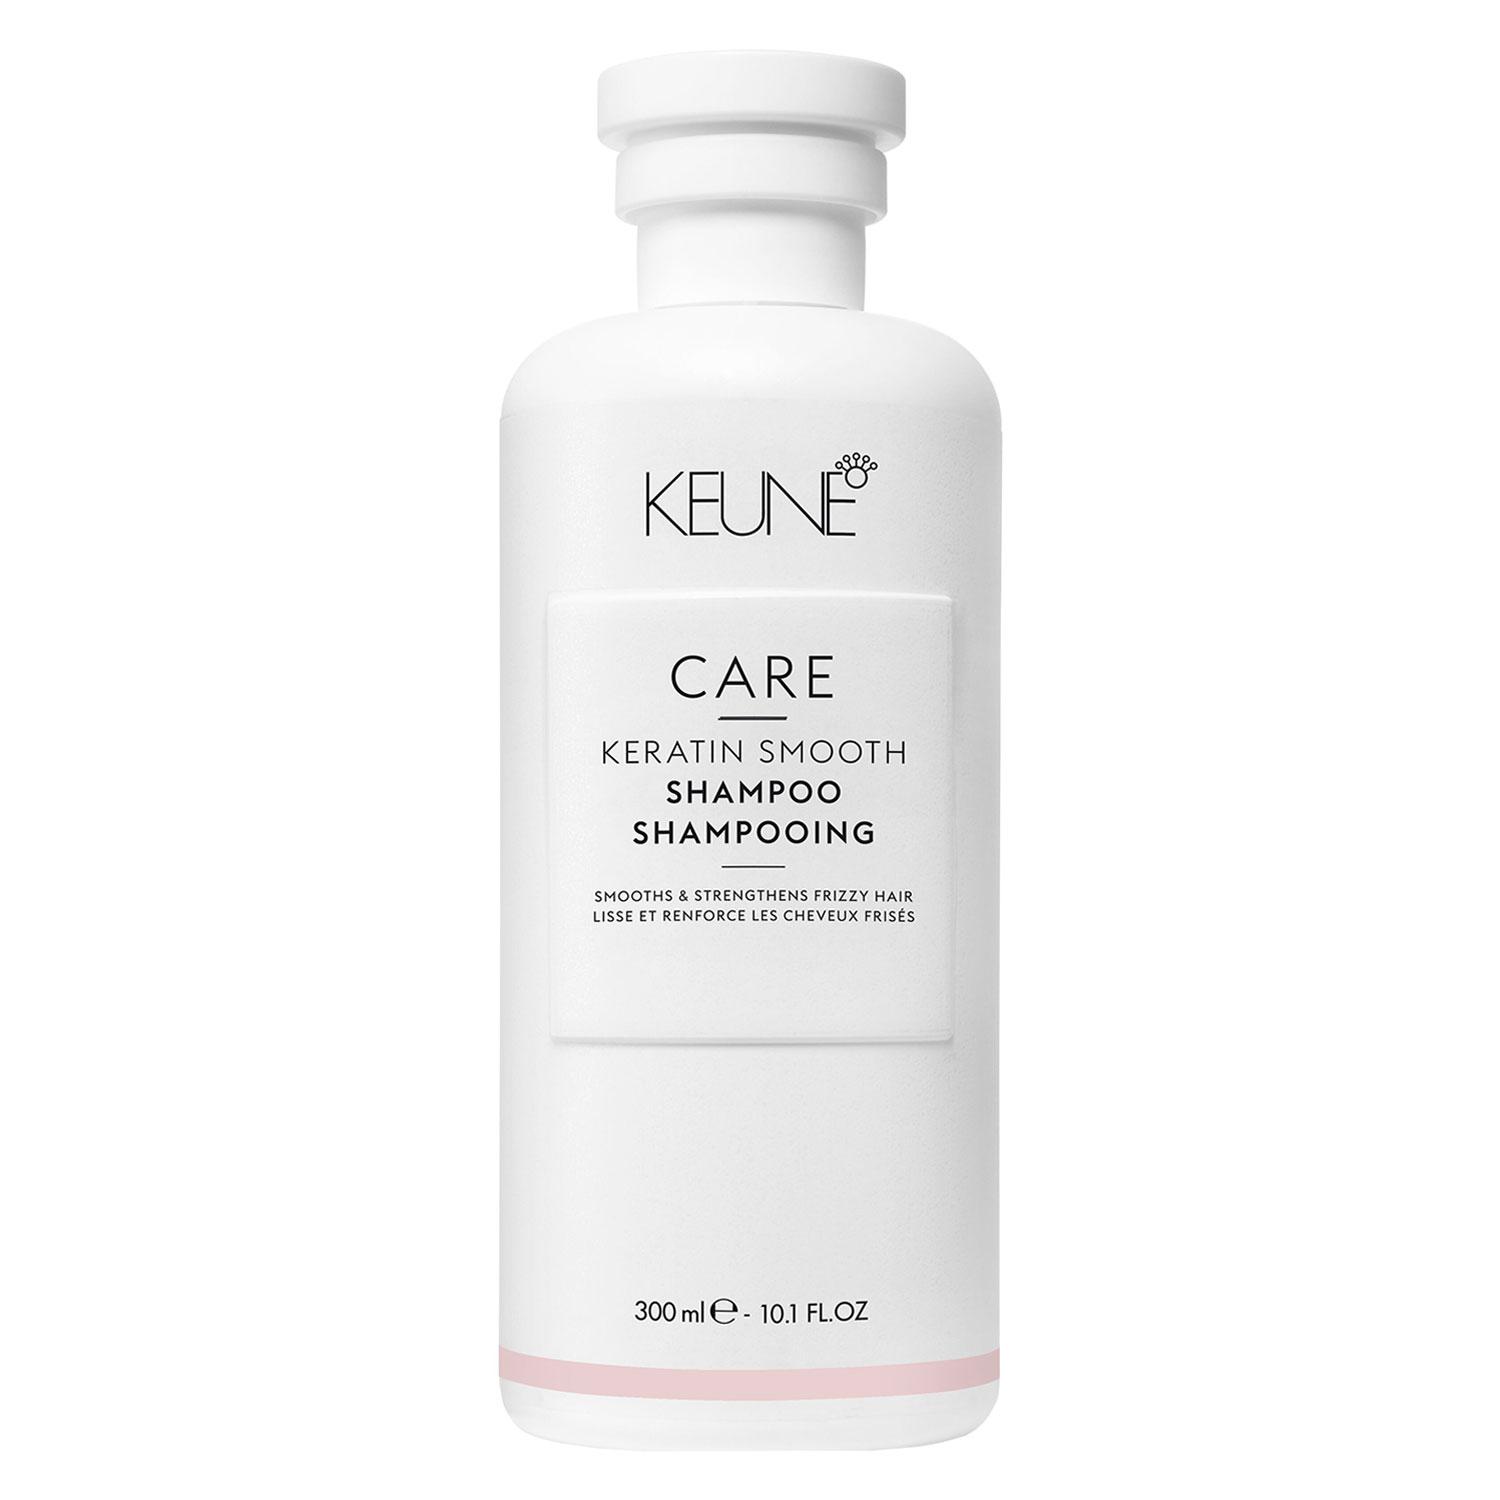 Keune Care - Keratin Smooth Shampoo